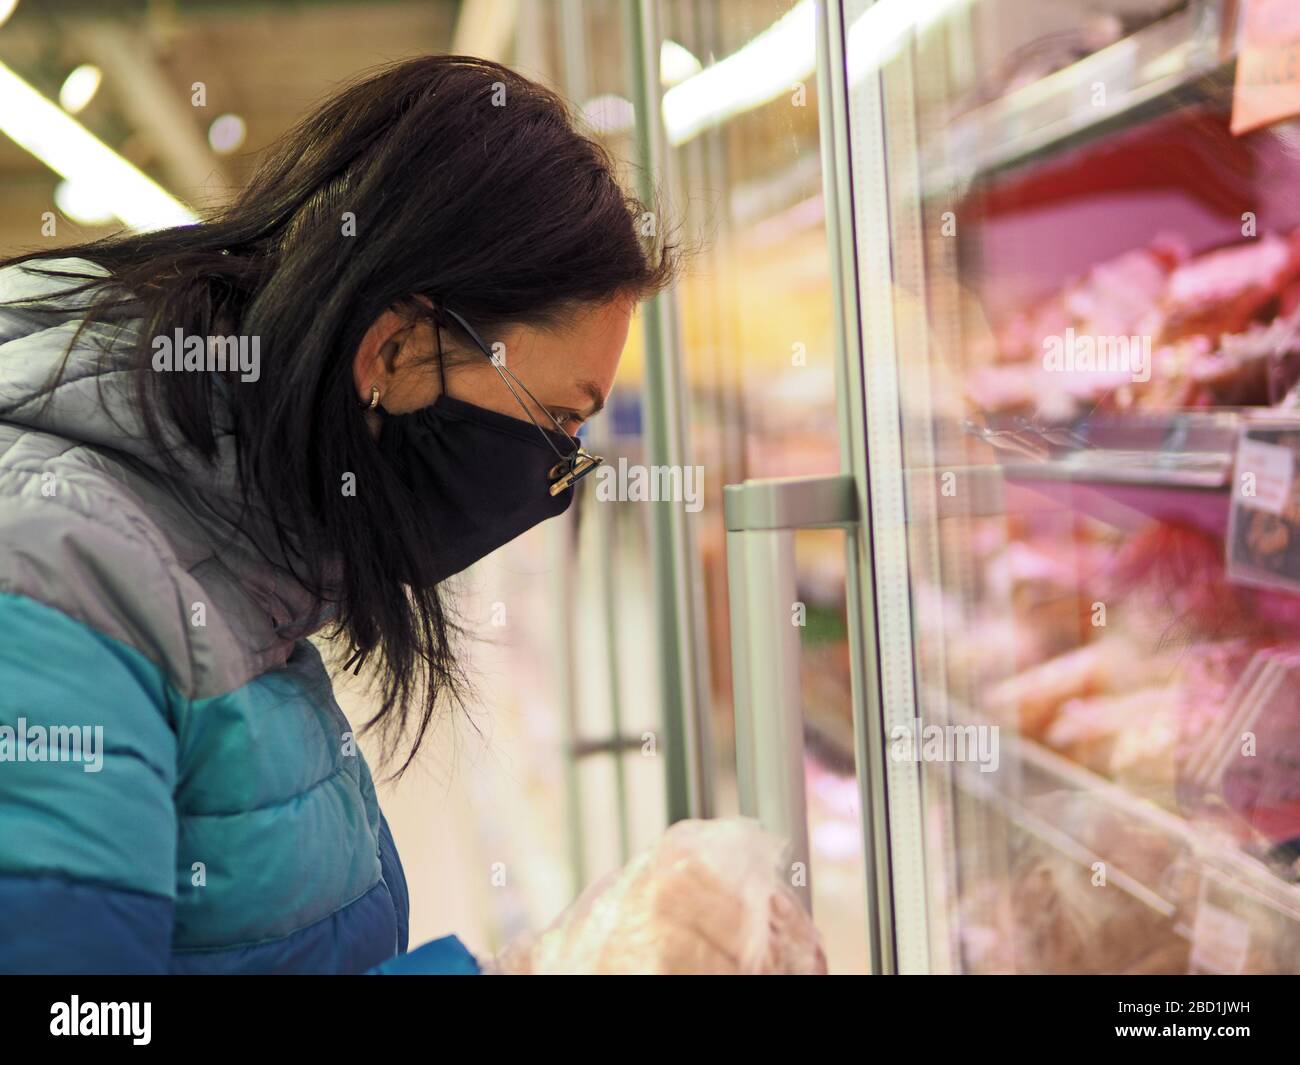 donna con maschera protettiva sul viso acquista in un centro commerciale durante una pandemia di coronavir Foto Stock